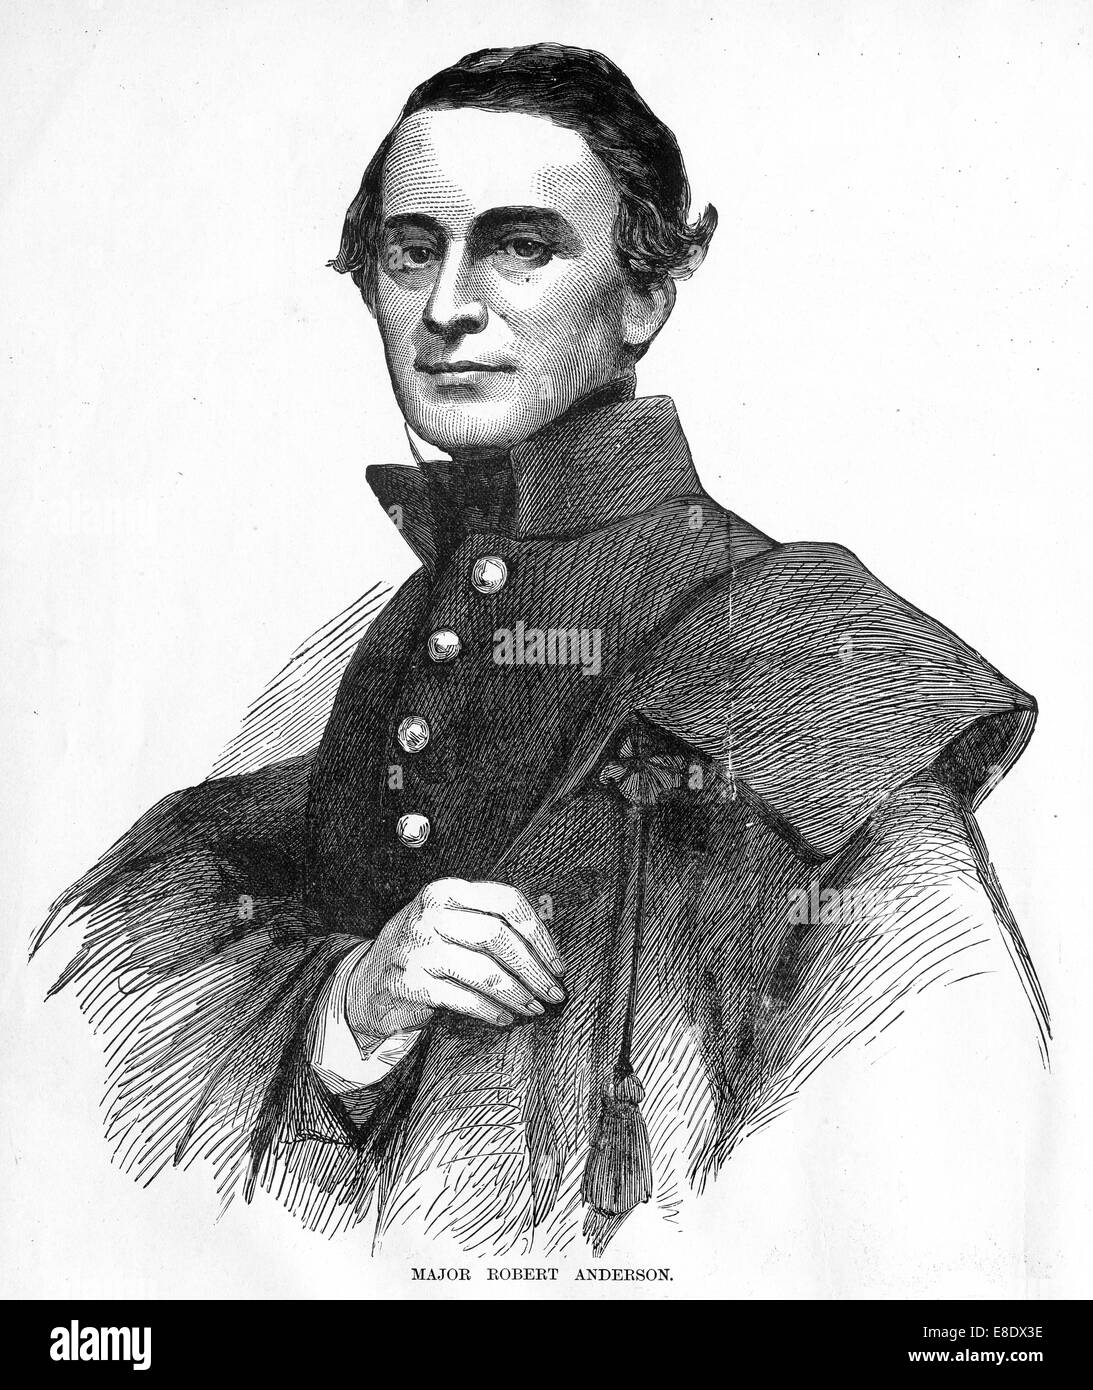 Gravur von Major Robert Anderson aus "Berühmte Führer und Kampfszenen des Bürgerkrieges", veröffentlicht im Jahr 1864. Stockfoto